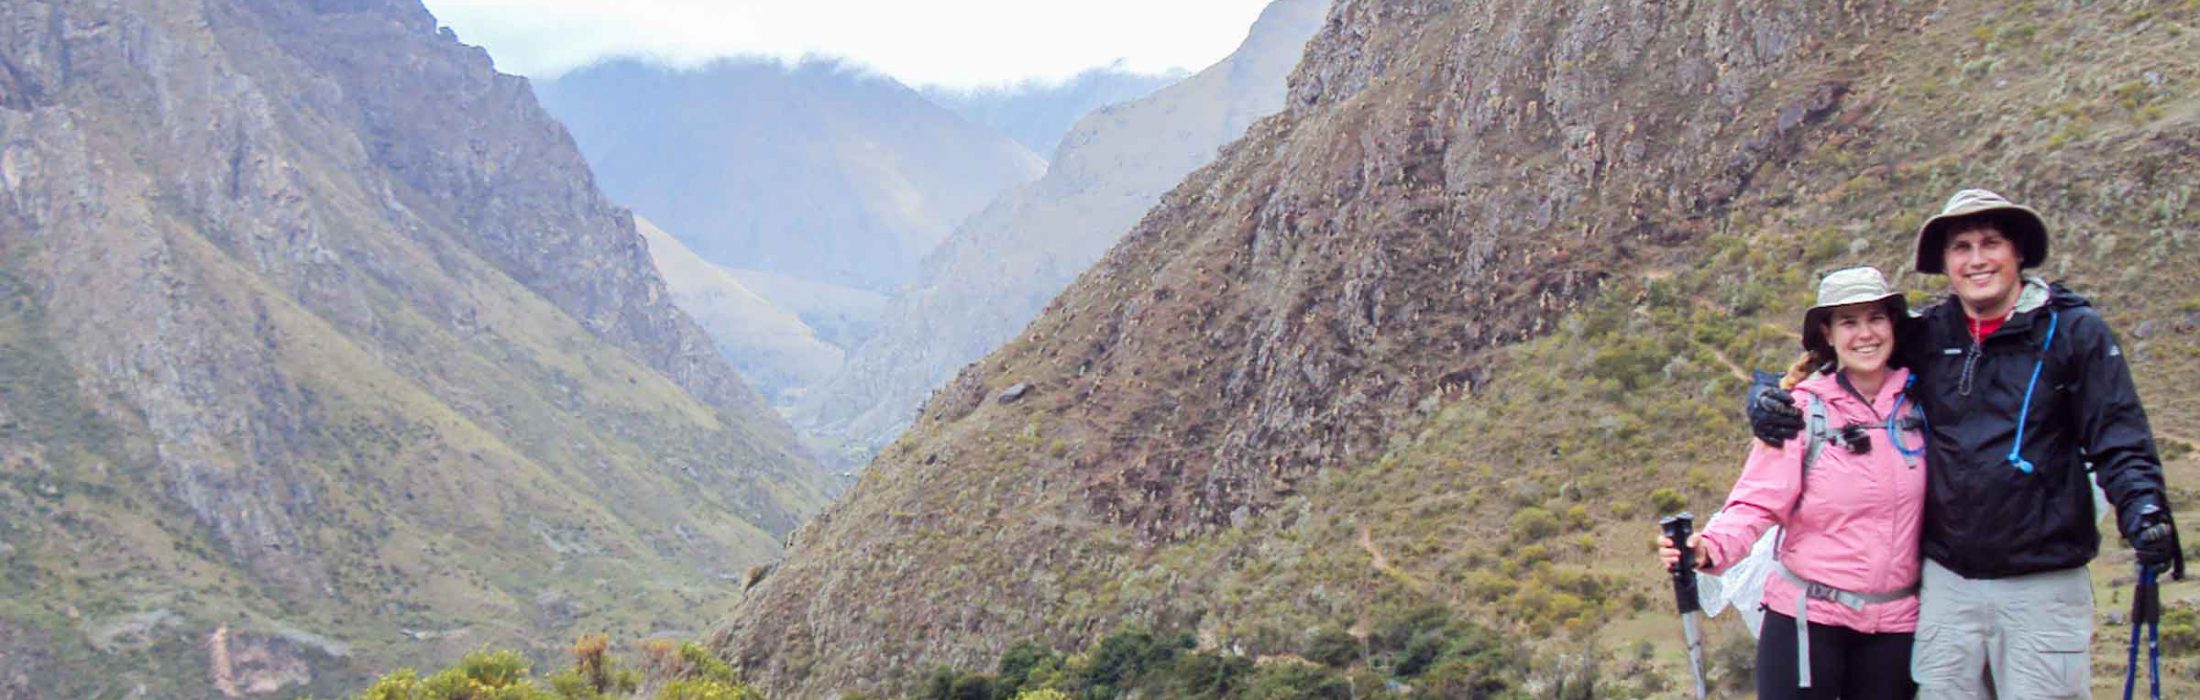 9 Day Short Inca Trail Peru Package